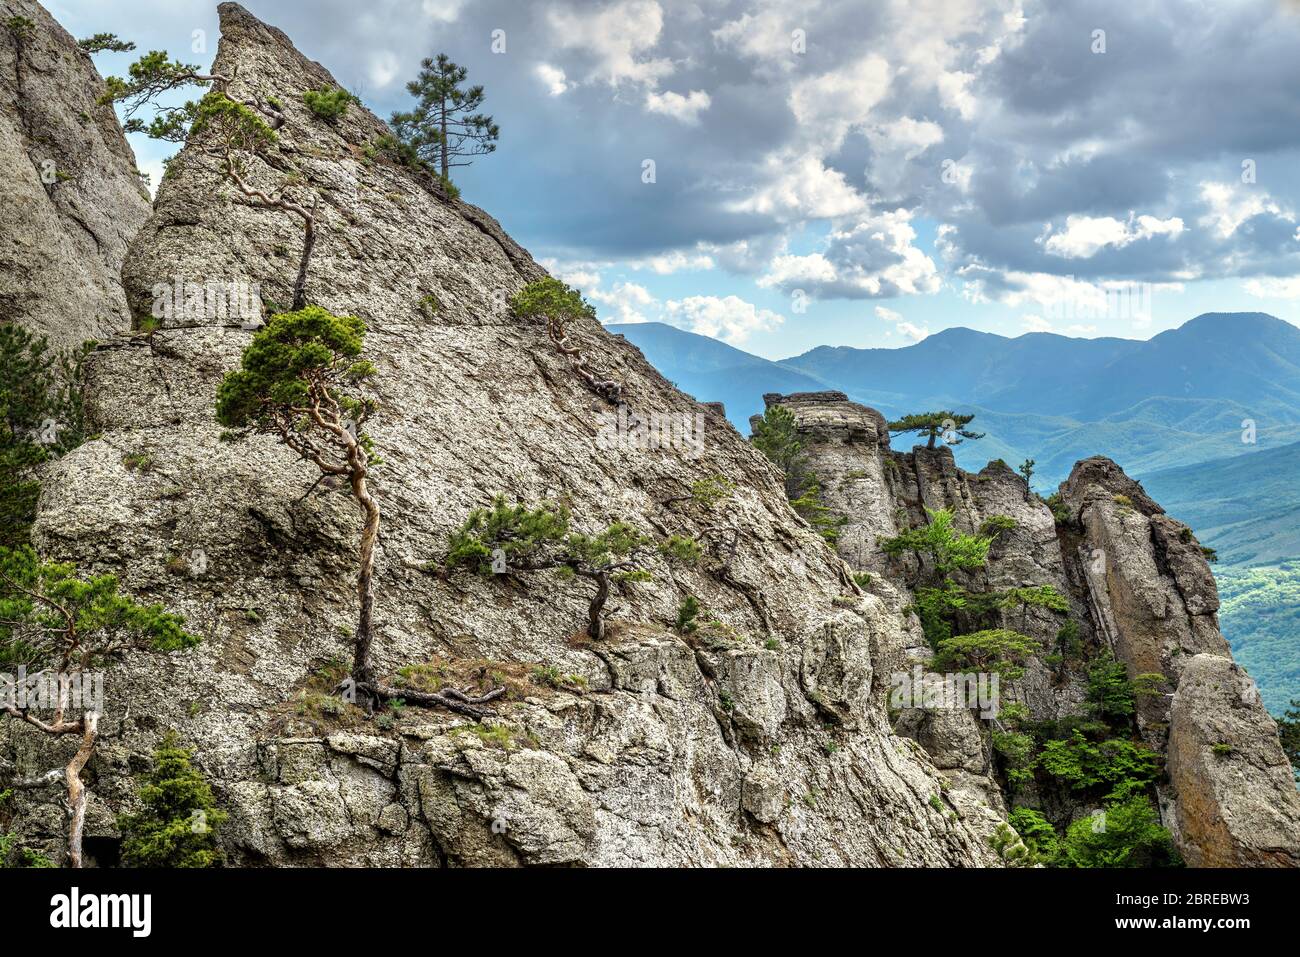 Die Berglandschaft Krim, Russland. Landschaftlich schöne Aussicht auf die Bergkette des Demerdji. Landschaft der Krimfelsen mit Kiefern im Sommer. Wunderschönes Nat Stockfoto